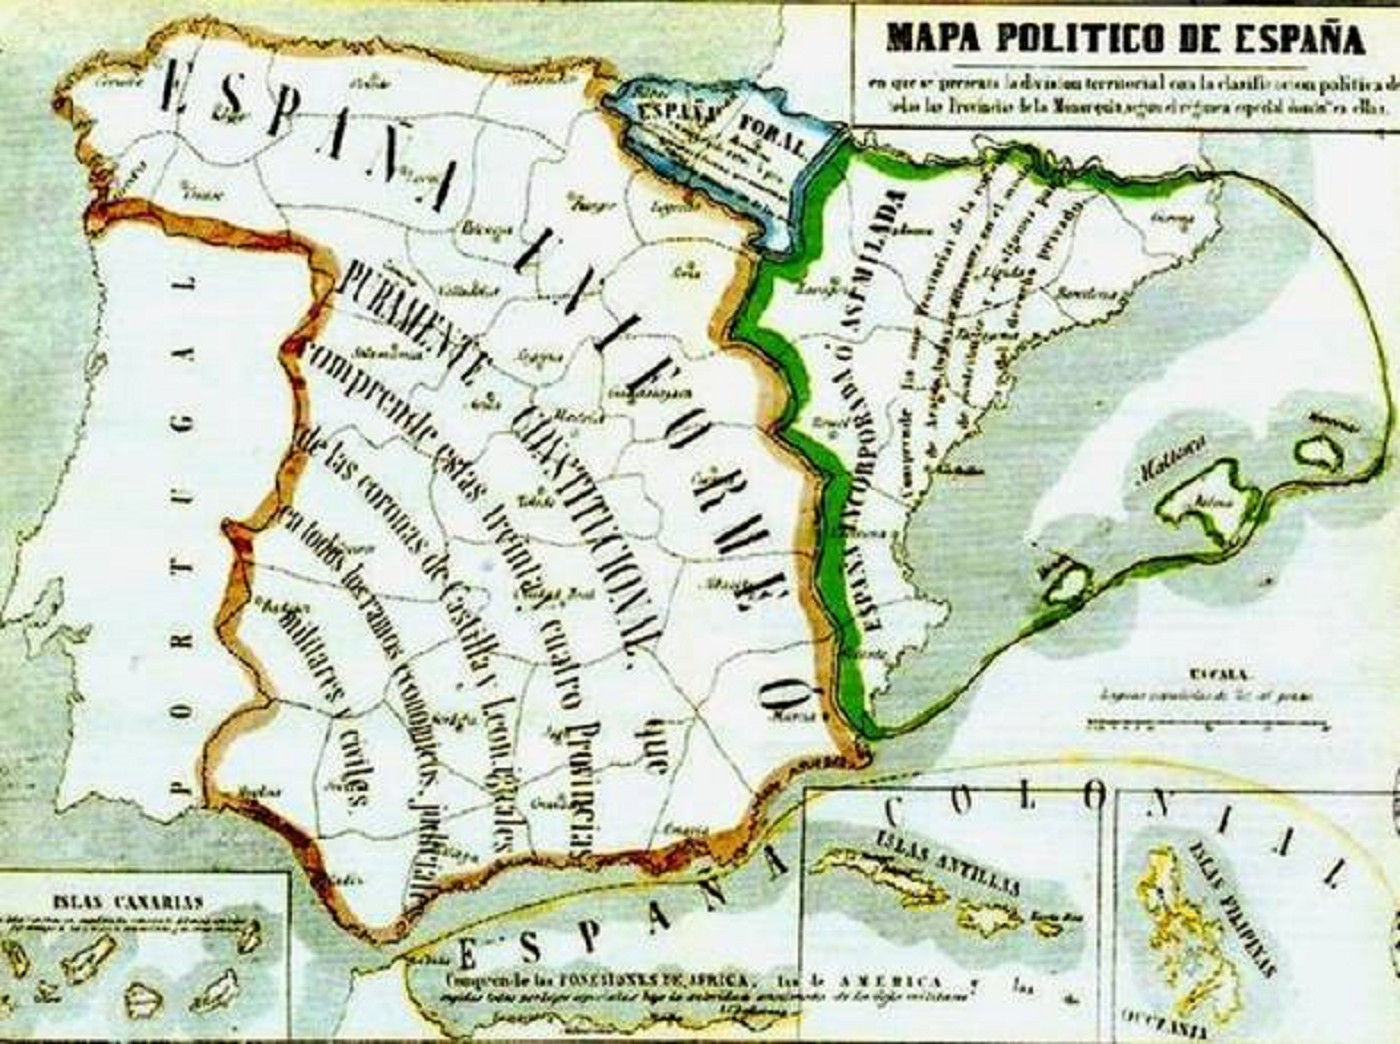 Pi i Margall es nomenat president de la I República espanyola. Mapa politic d'espanya (1854). Font Biblioteca Nacional de España